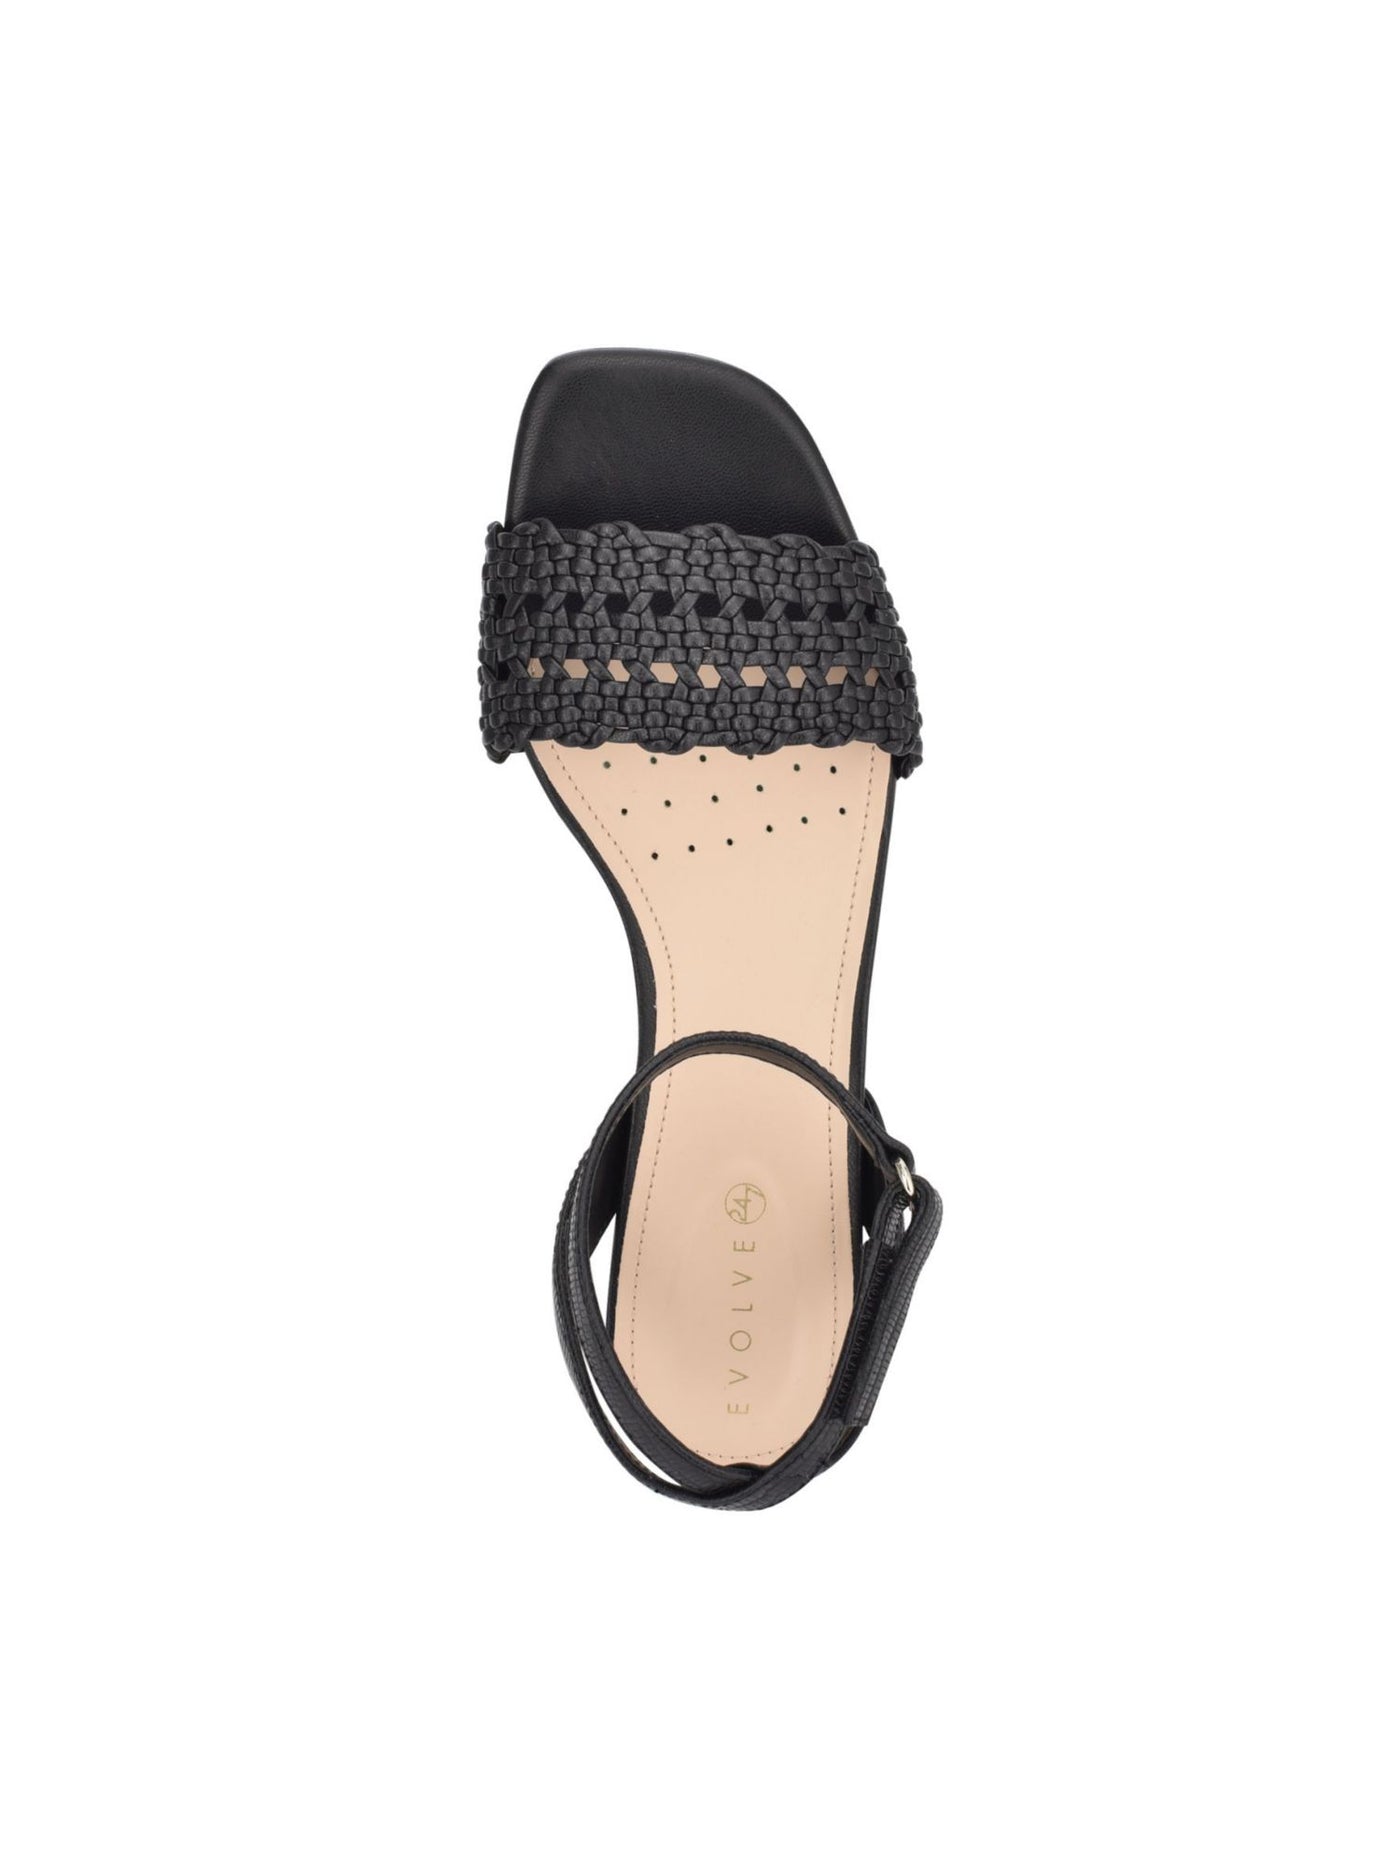 EVOLVE Womens Black Adjustable Strap Comfort Ingrid2 Open Toe Sandals Shoes 9.5